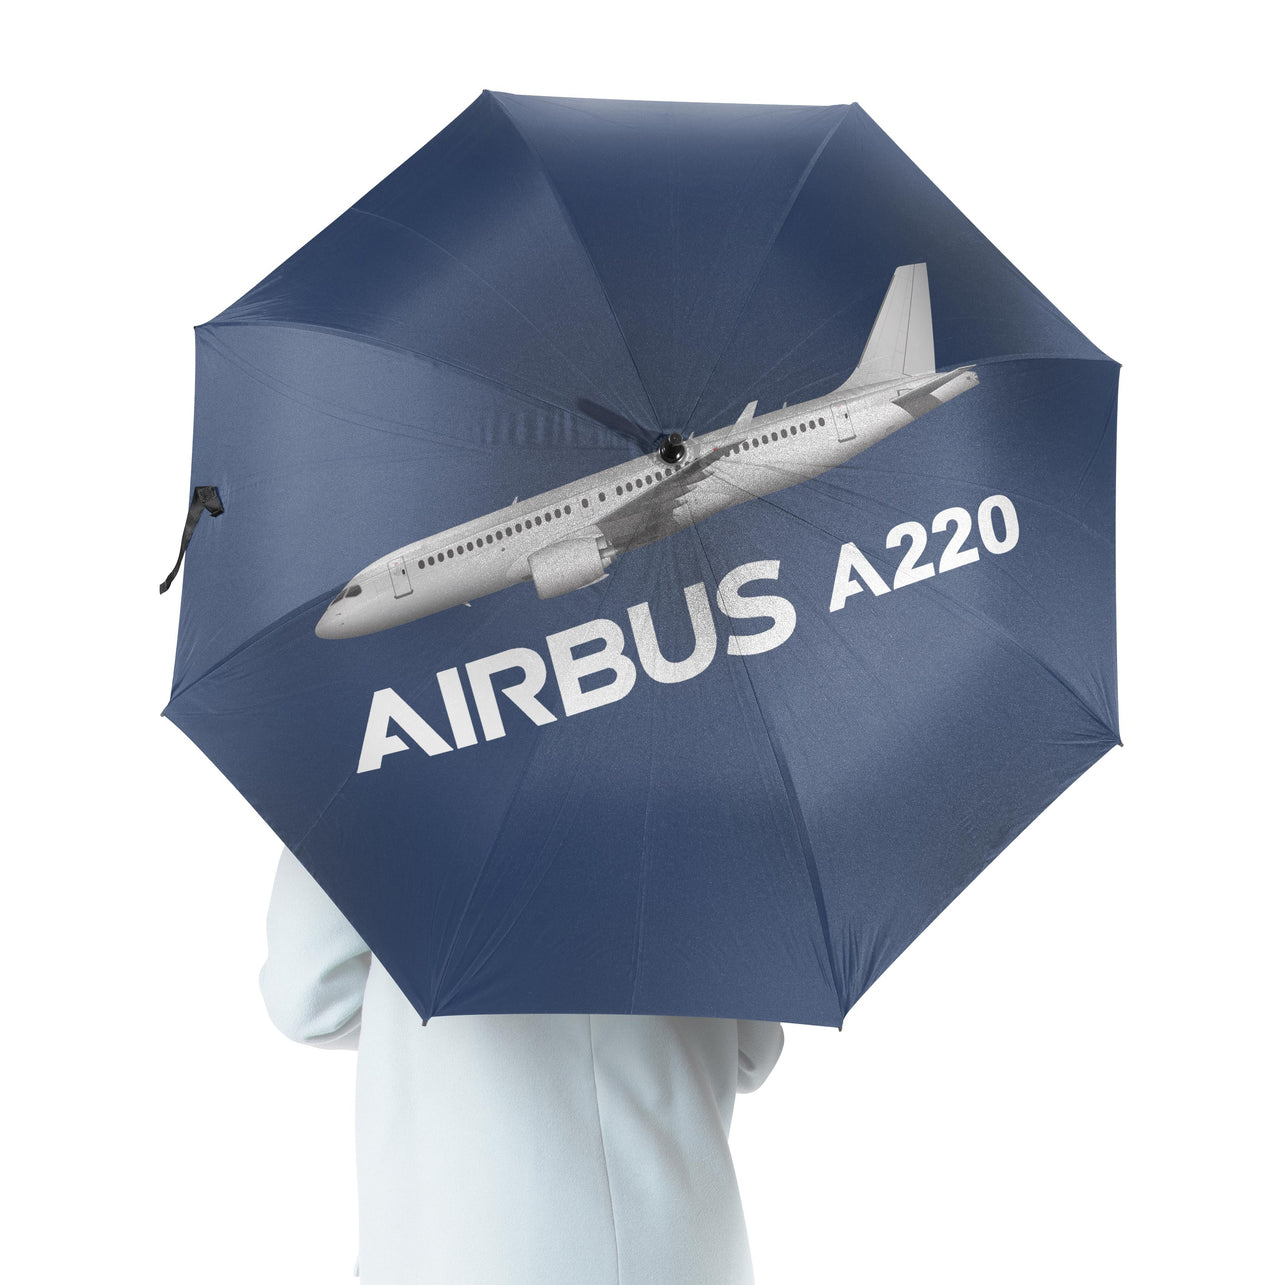 The Airbus A220 Designed Umbrella